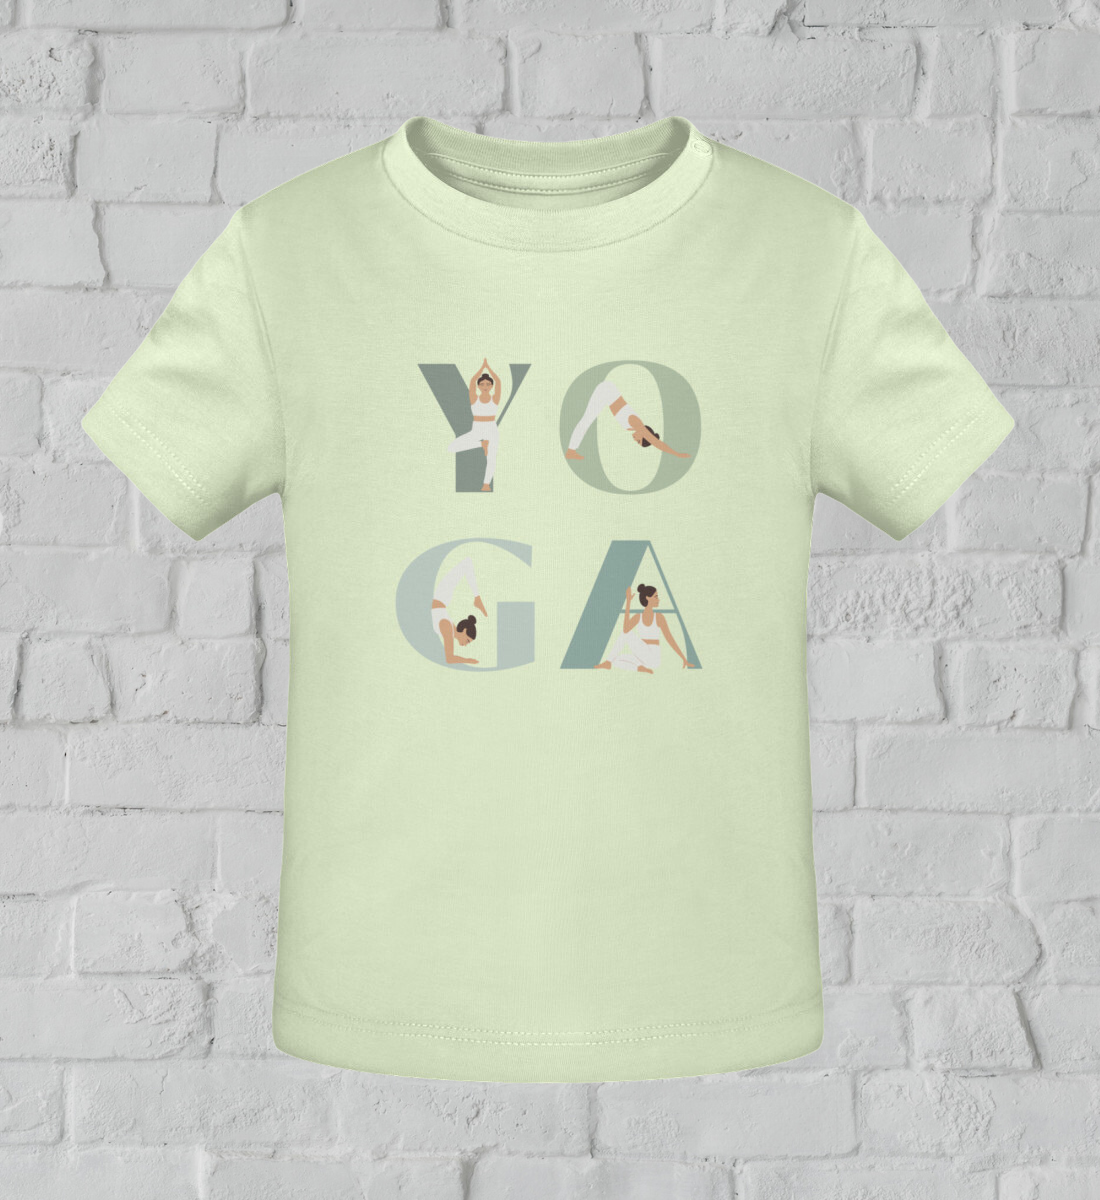 yoga girl l kinder yoga shirt hellgrün l mode für kinder l nachhaltige yoga kleidung für kinder l mode für kinder online shoppen